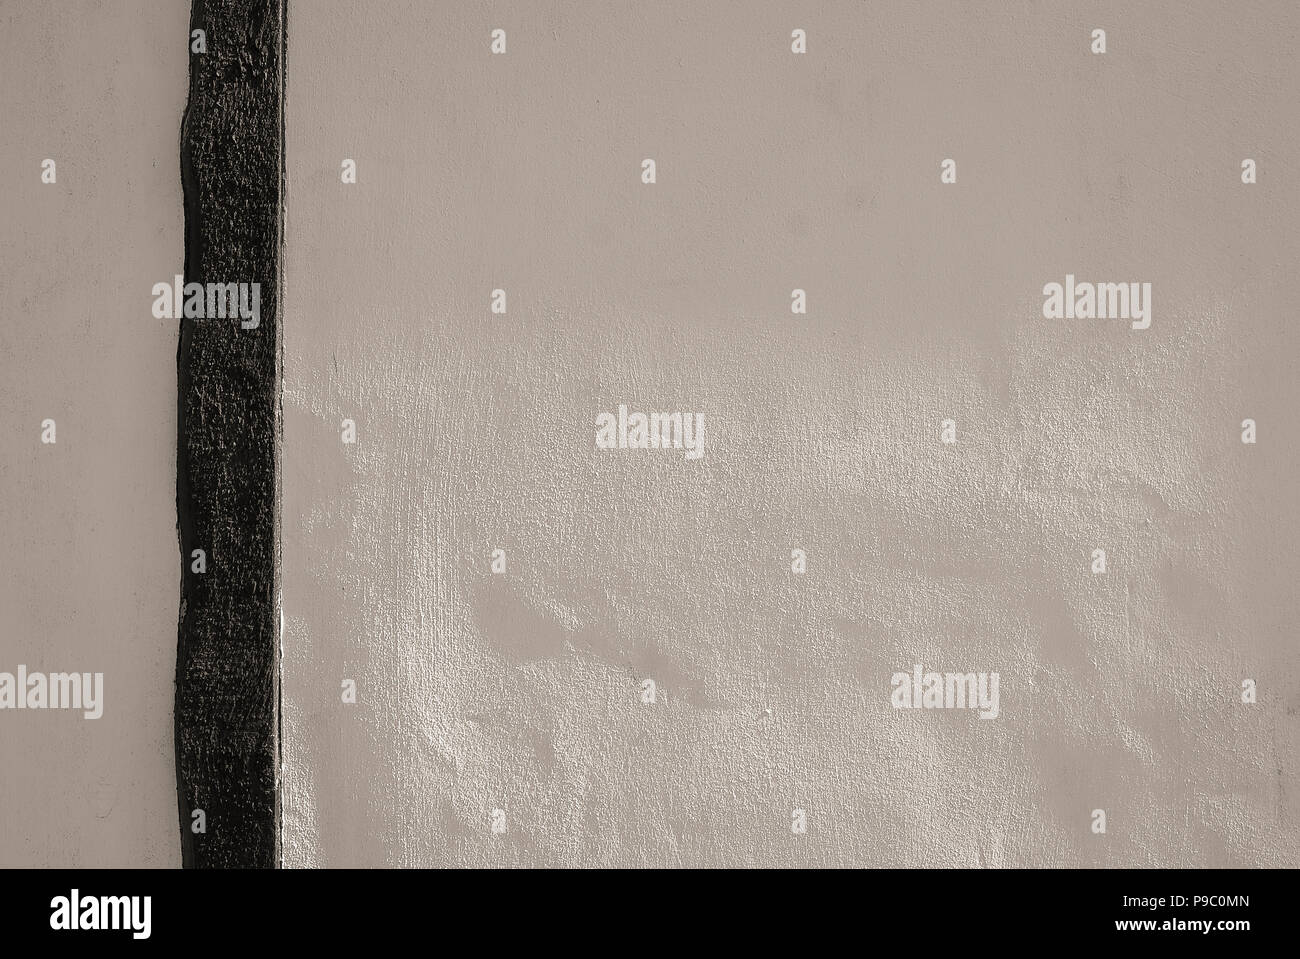 Un muro bianco nero con funzione di legname che mostra la texture di intonaco. Adatto per l'uso come sfondo Foto Stock